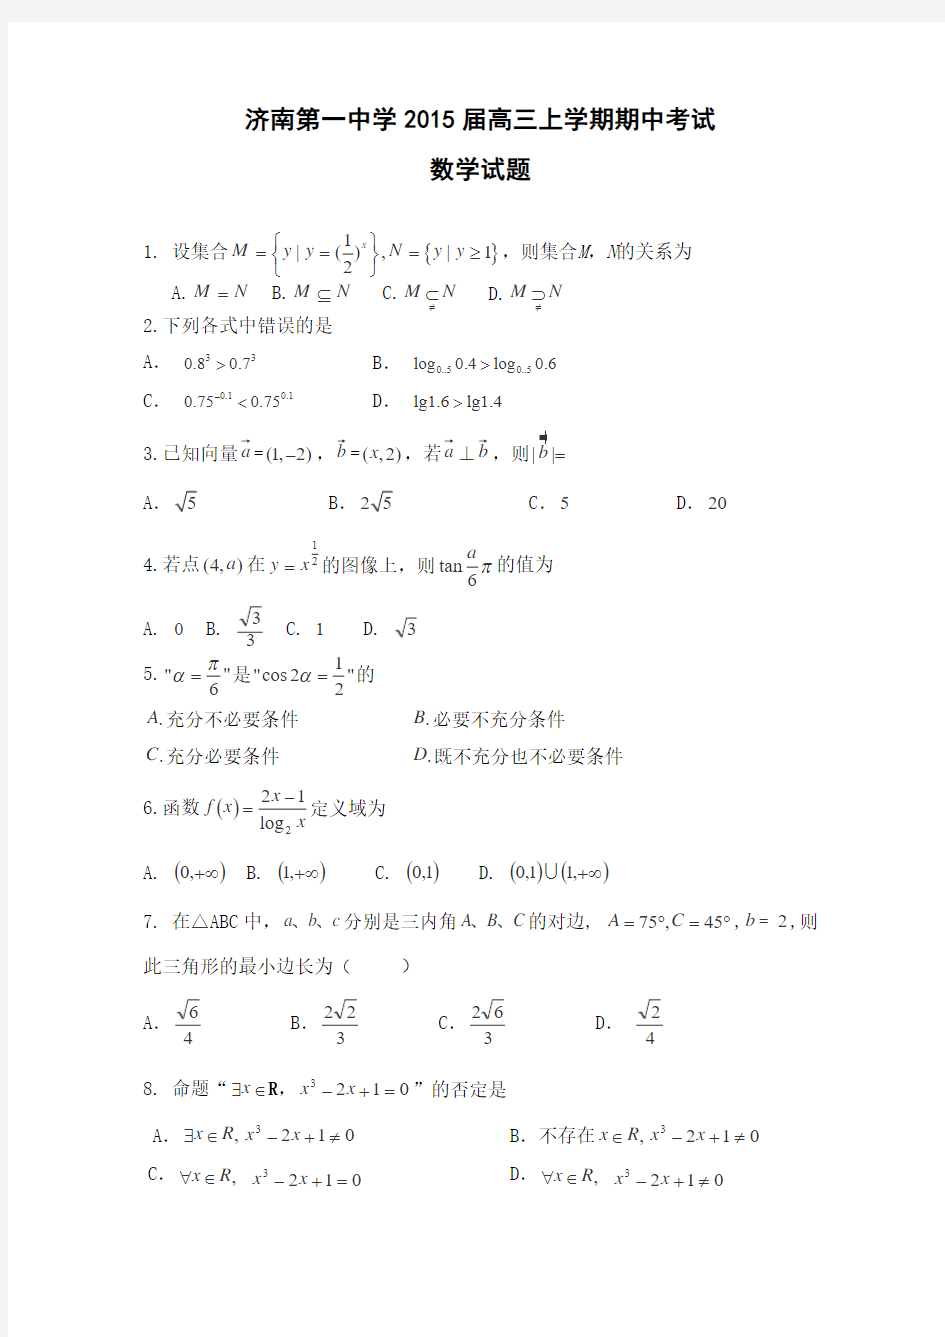 2014年11月济南一中高三期中考试数学(理)试题含答案